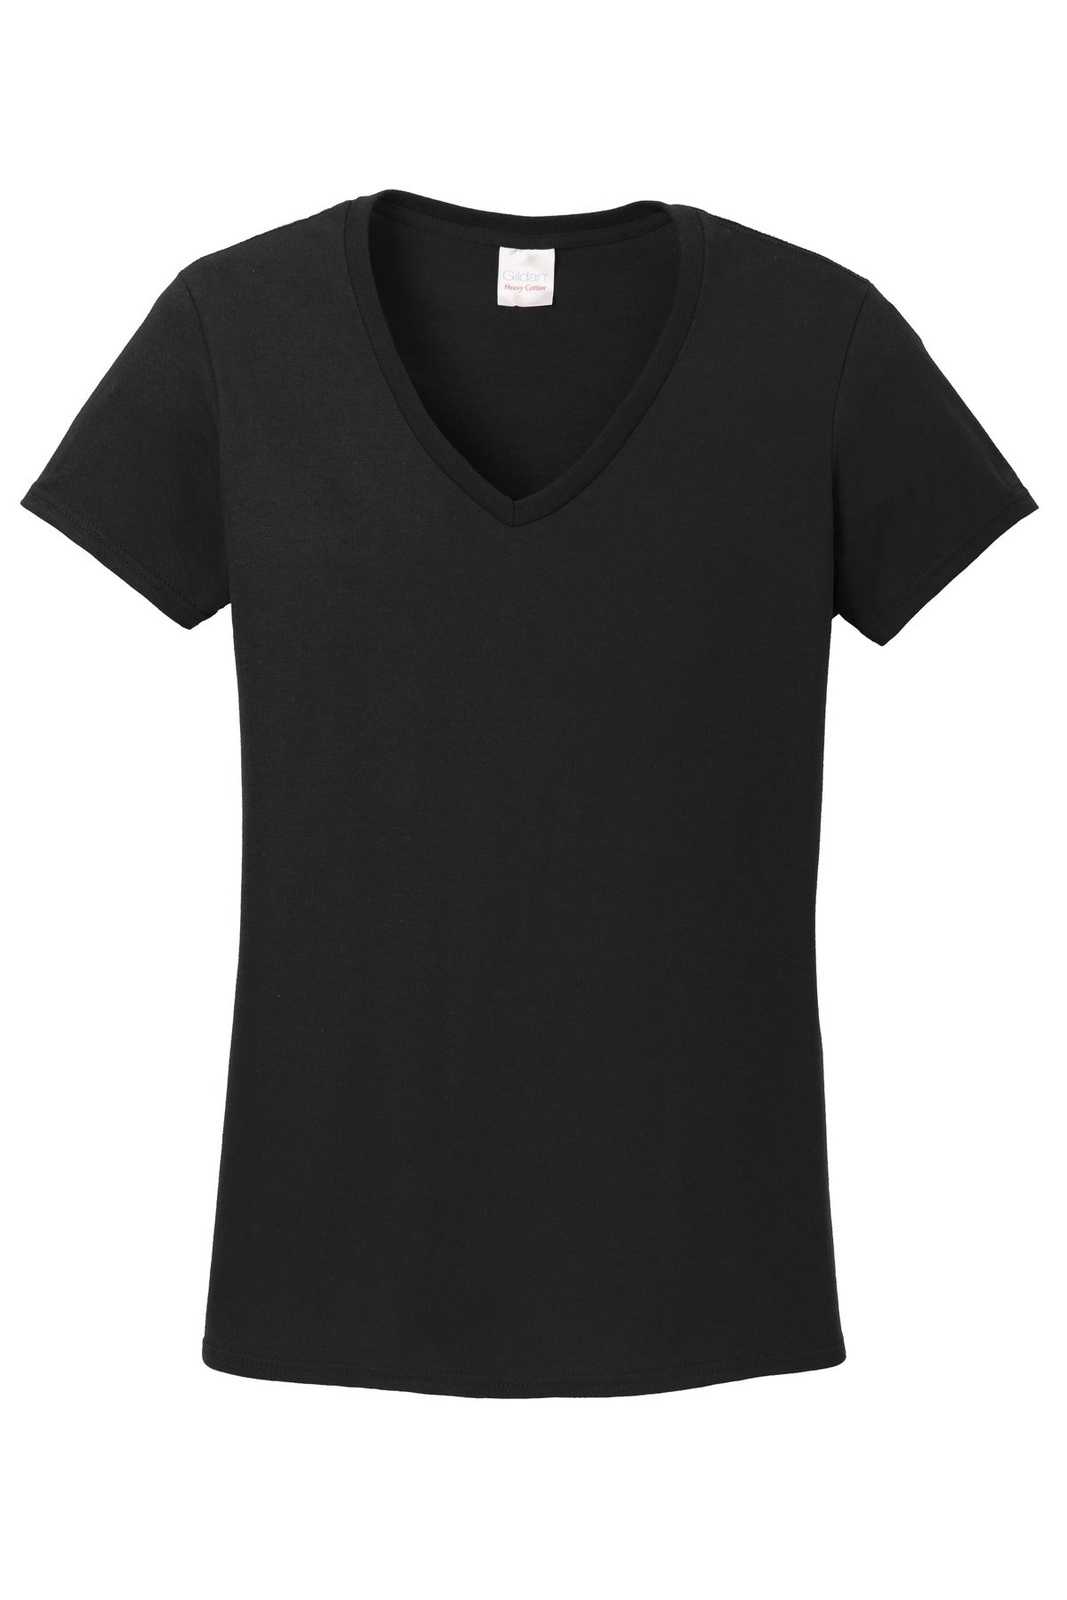 Gildan 5V00L Ladies Heavy Cotton 100% Cotton V-Neck T-Shirt - Black - HIT a Double